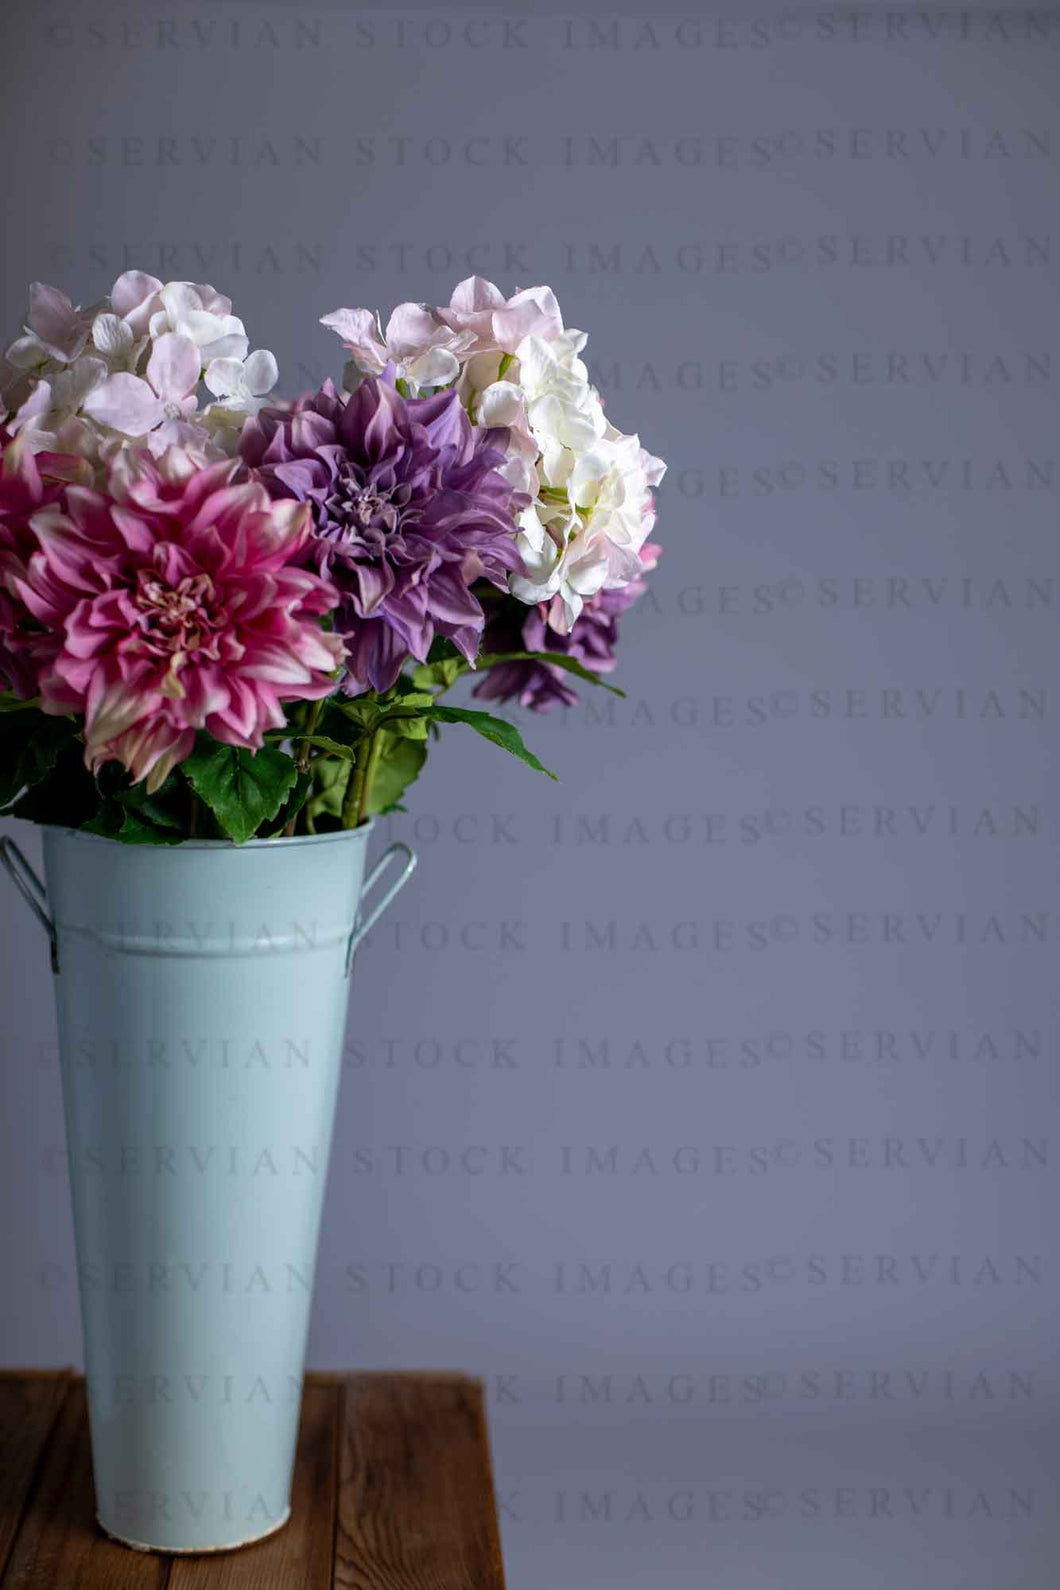 Still life - Flowers in a vase (KS 2364)